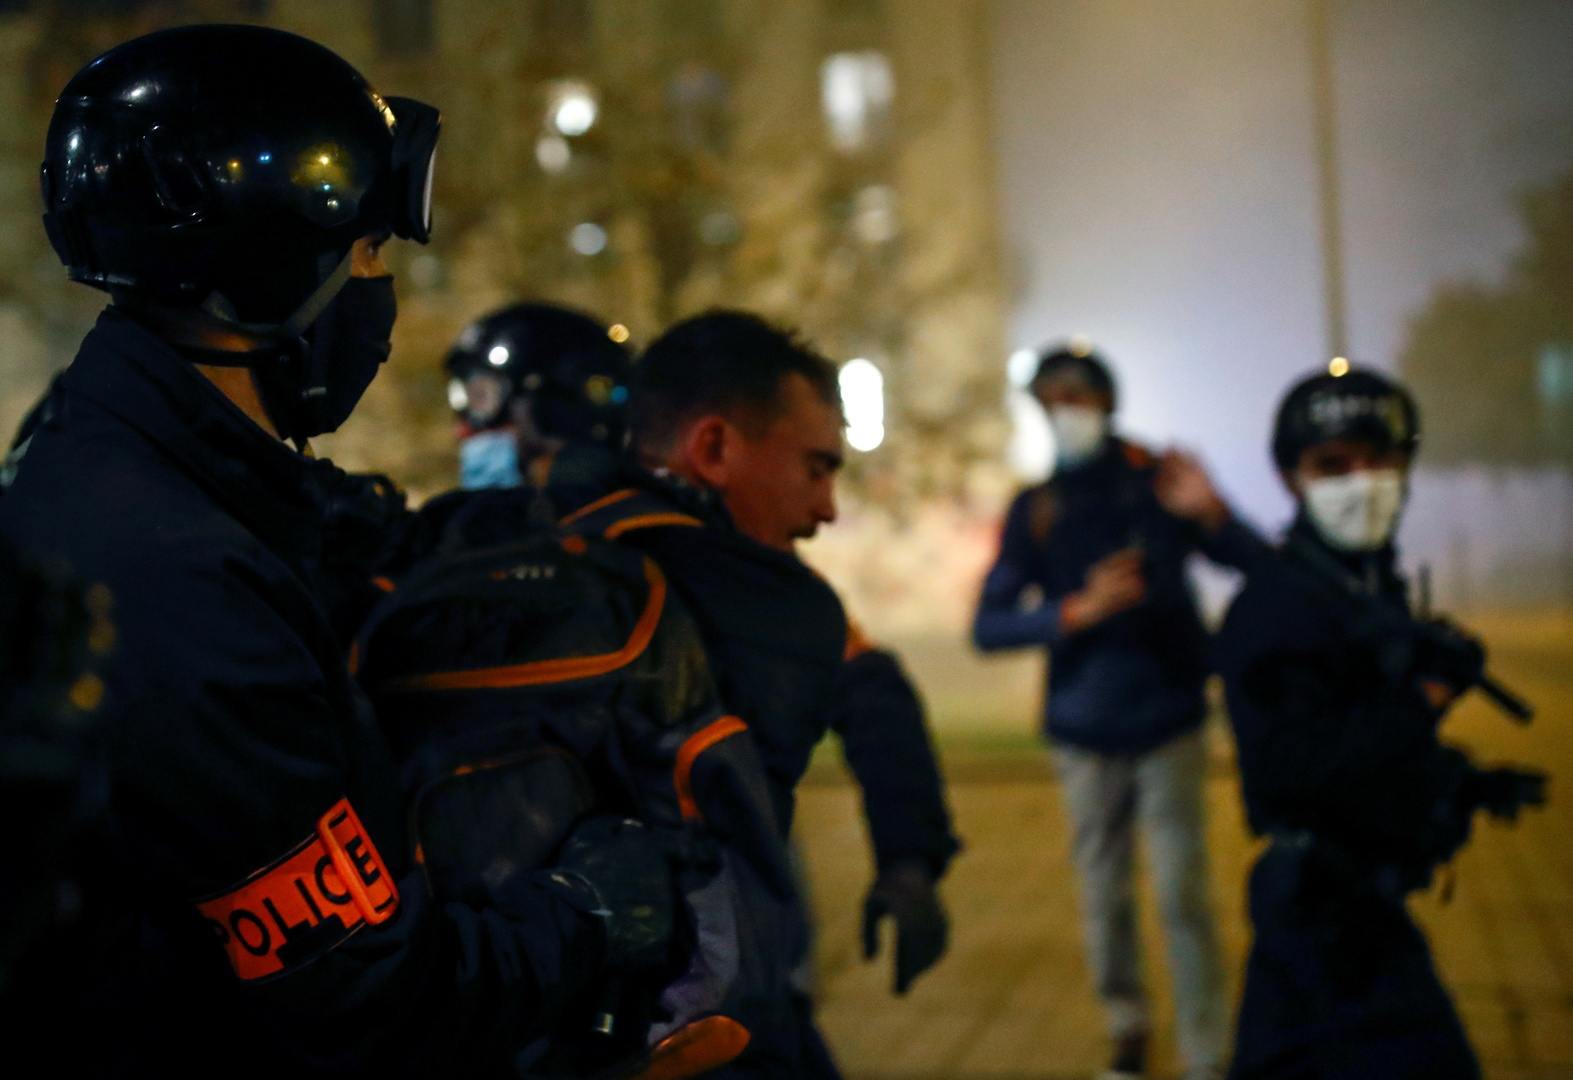 الحكومة الفرنسية تسقط مشروع قانون يمنع تصوير ضباط الشرطة